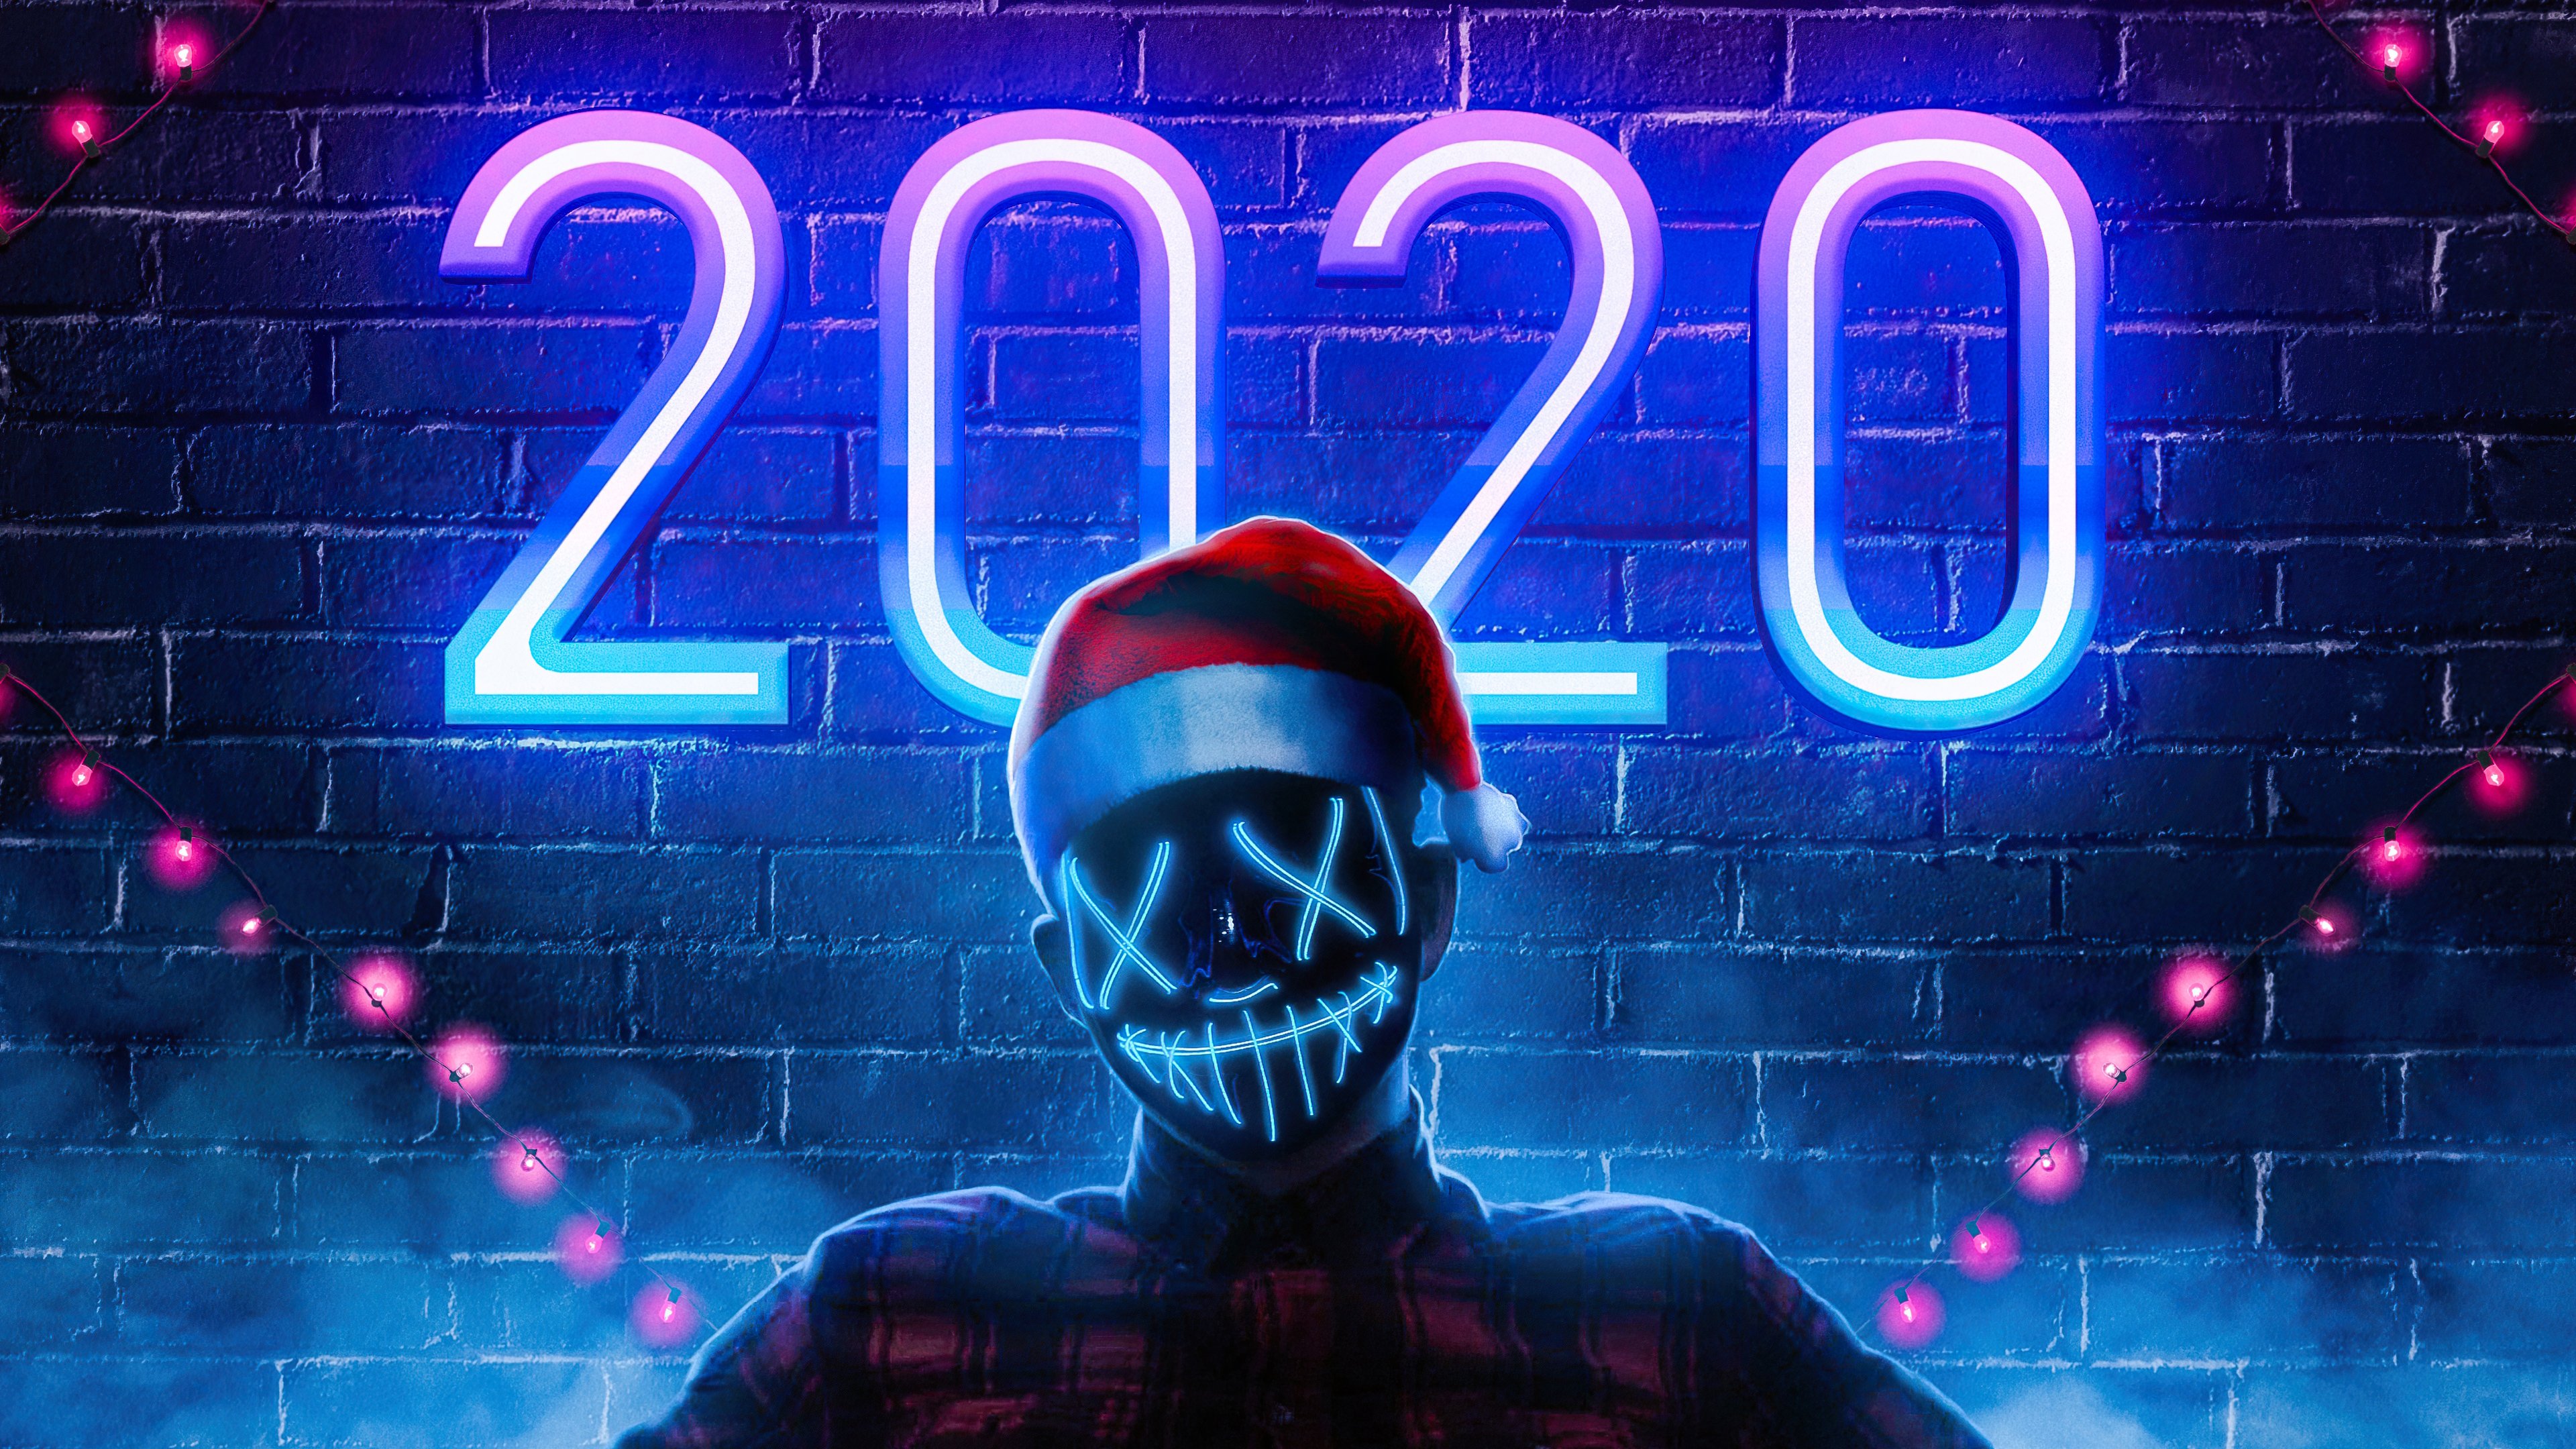 Wallpaper Ending of 2020